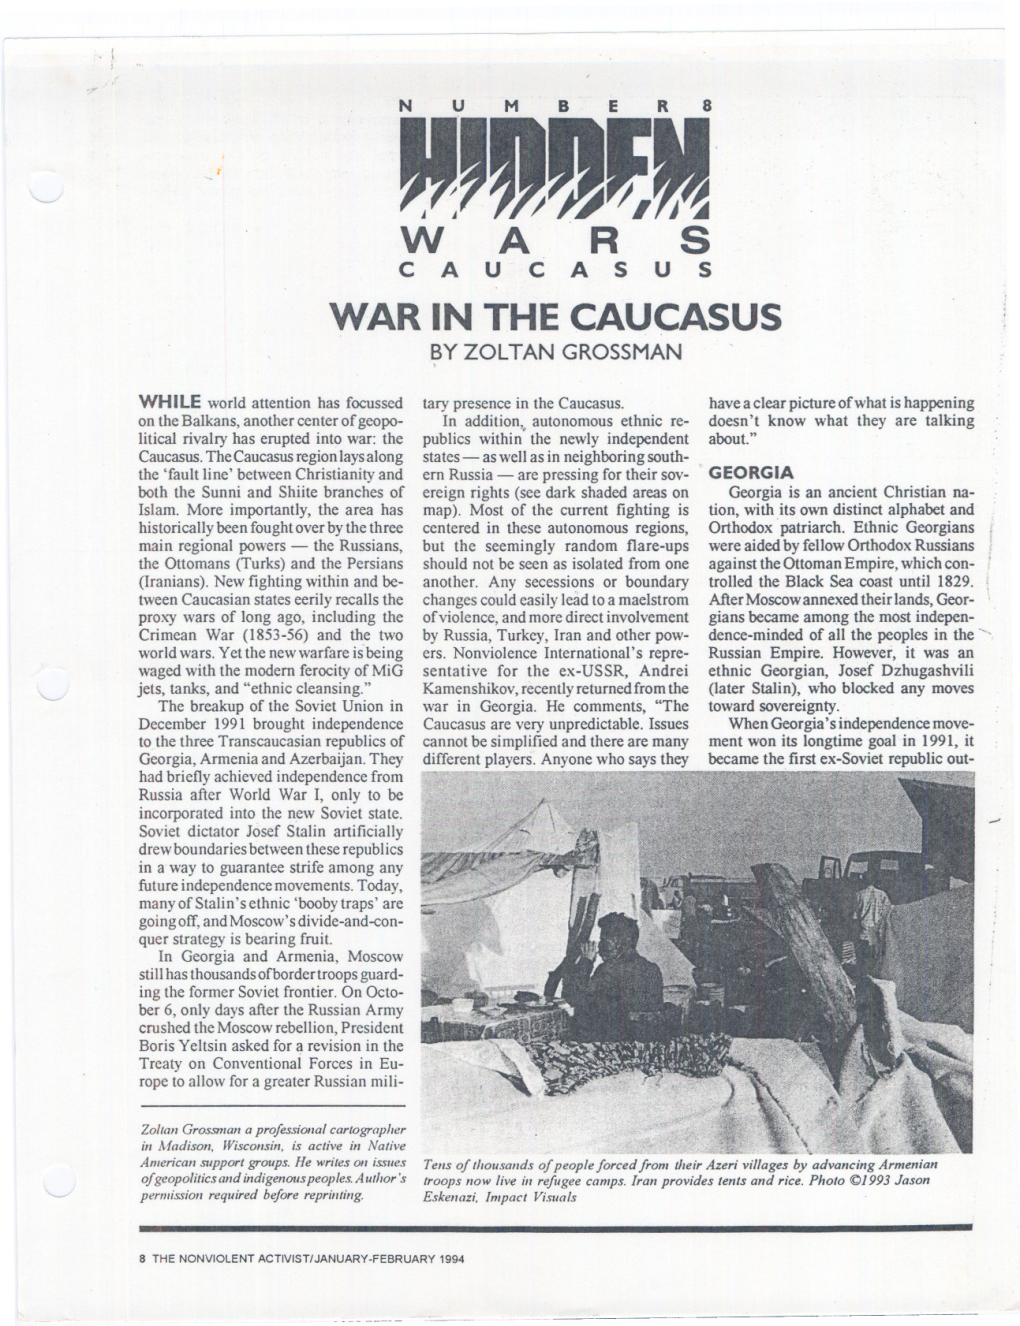 War in the Caucasus